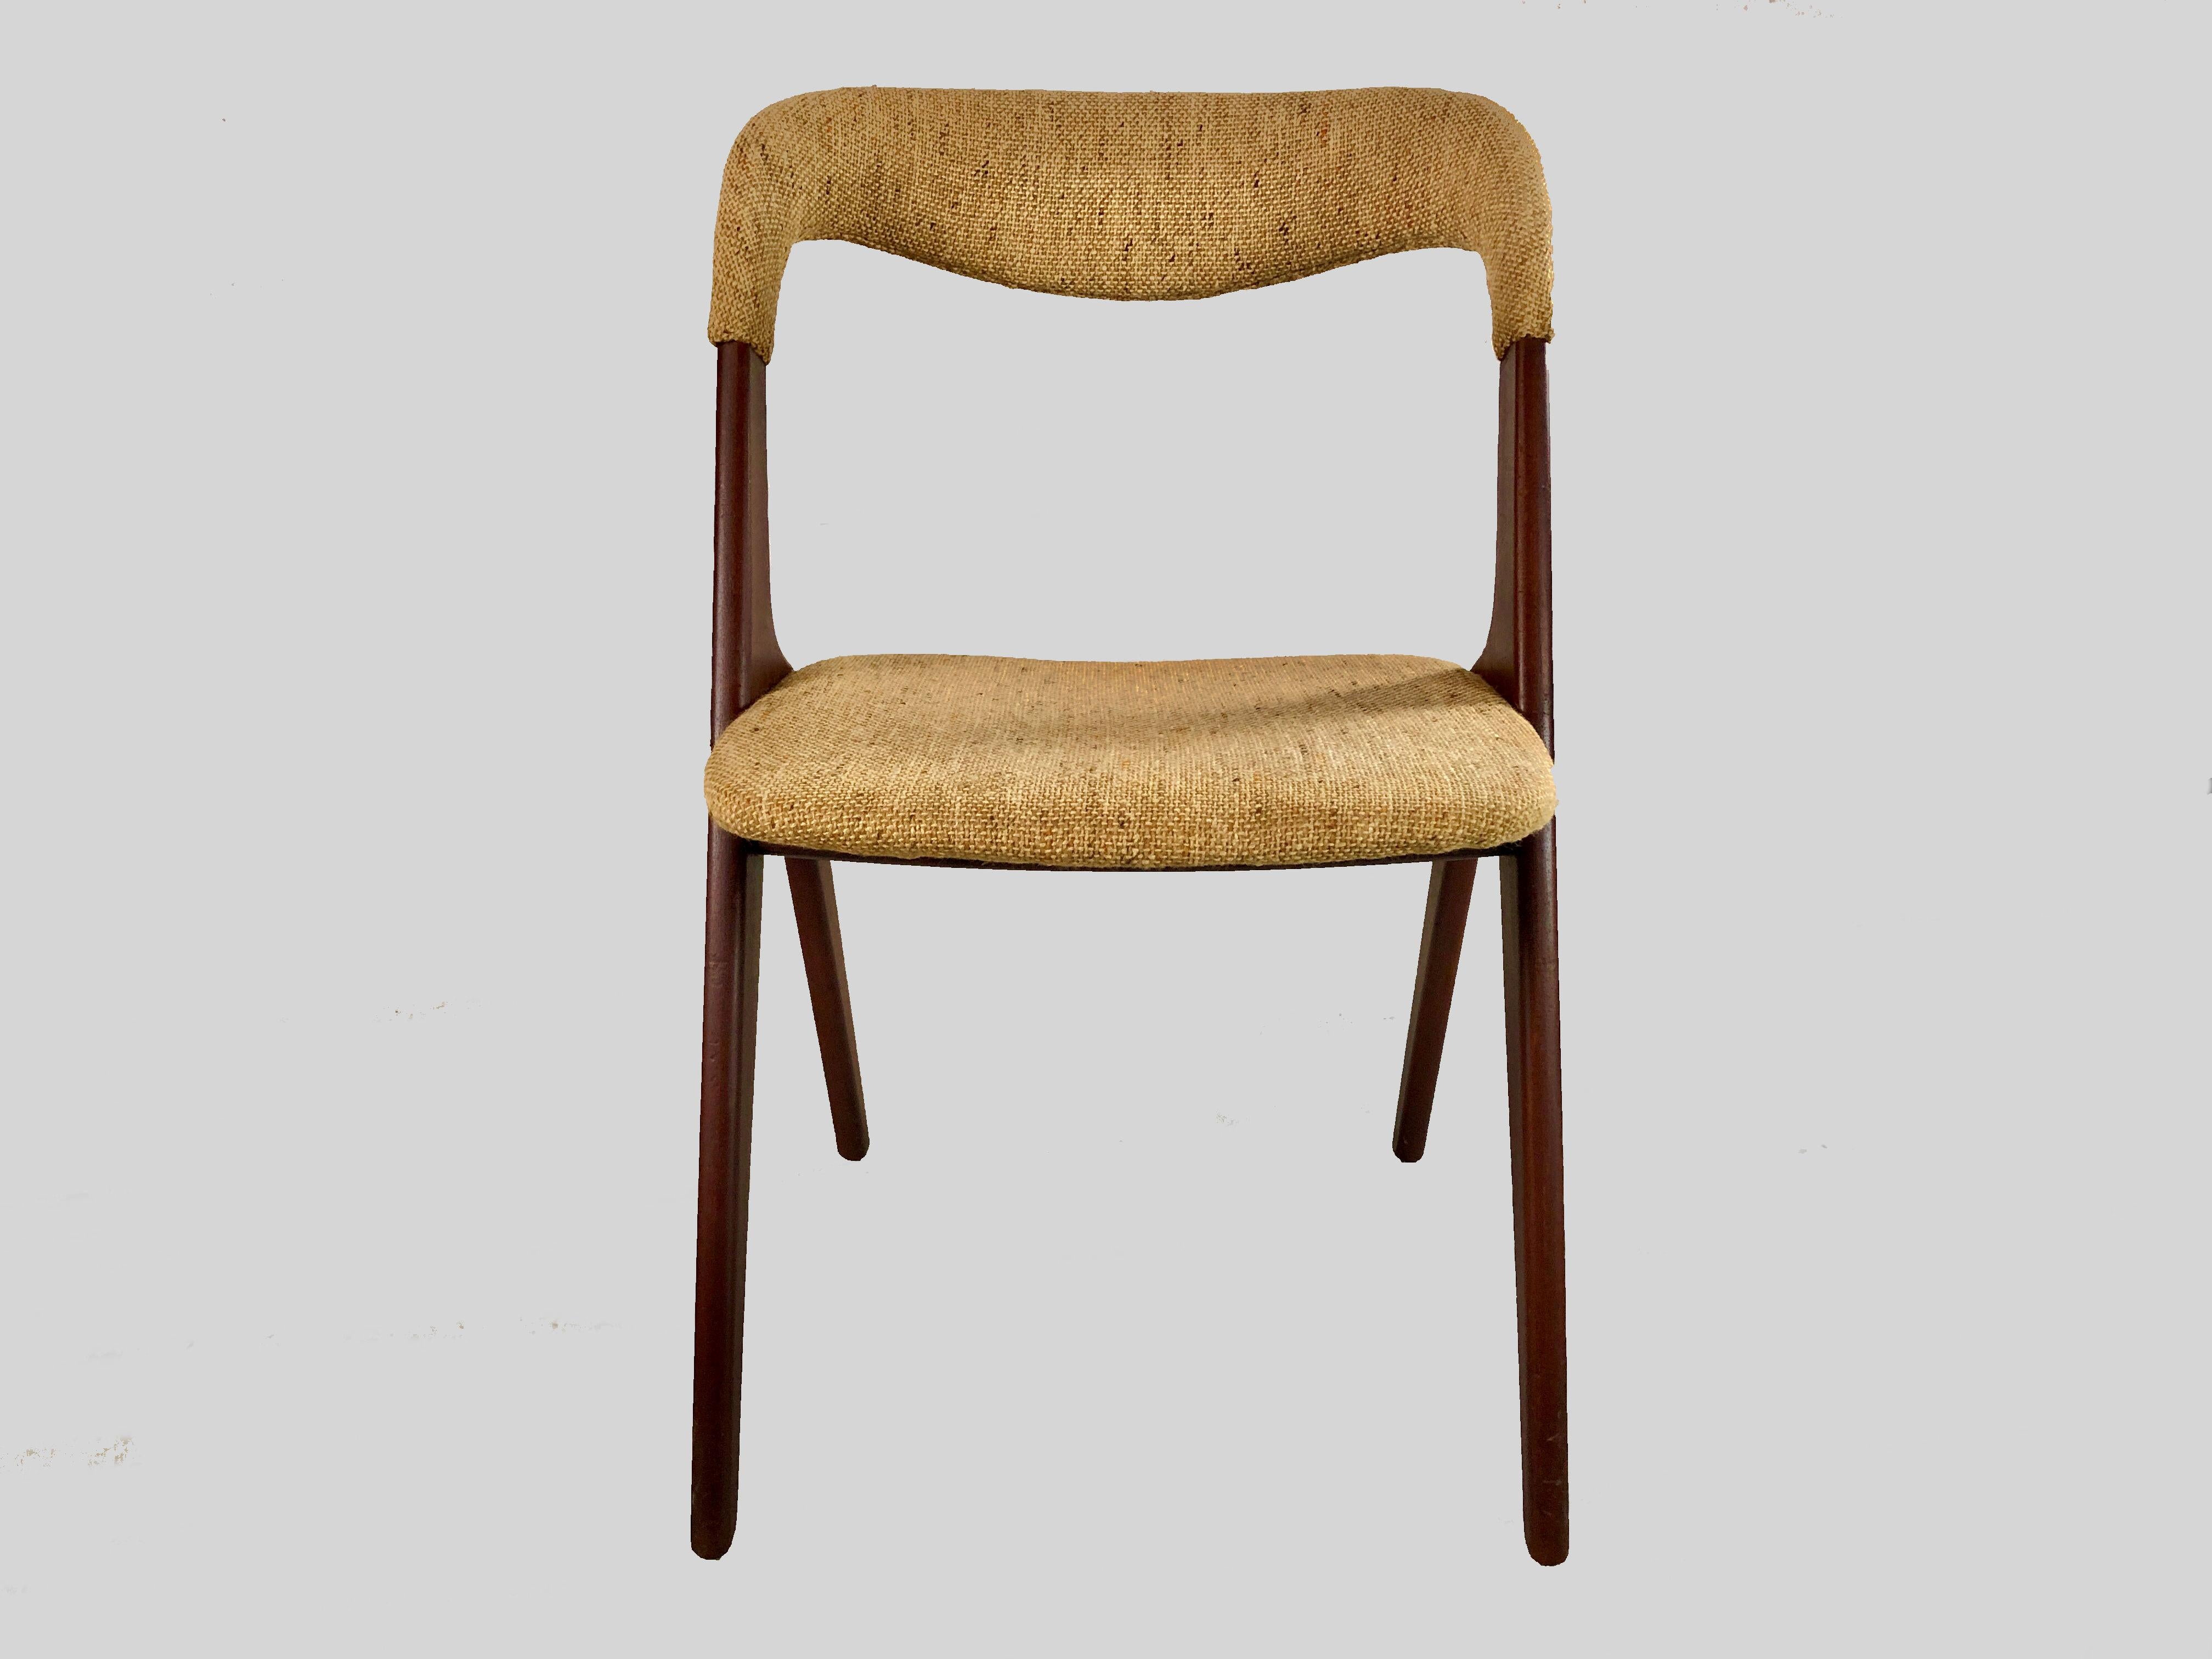 Ensemble de quatre chaises de salle à manger Johannes Andersen restaurées en teck, y compris un rembourrage personnalisé conçu pour Vamo Sønderborg. 

Ces chaises confortables sont dotées d'un solide cadre en teck de forme minimaliste et d'un